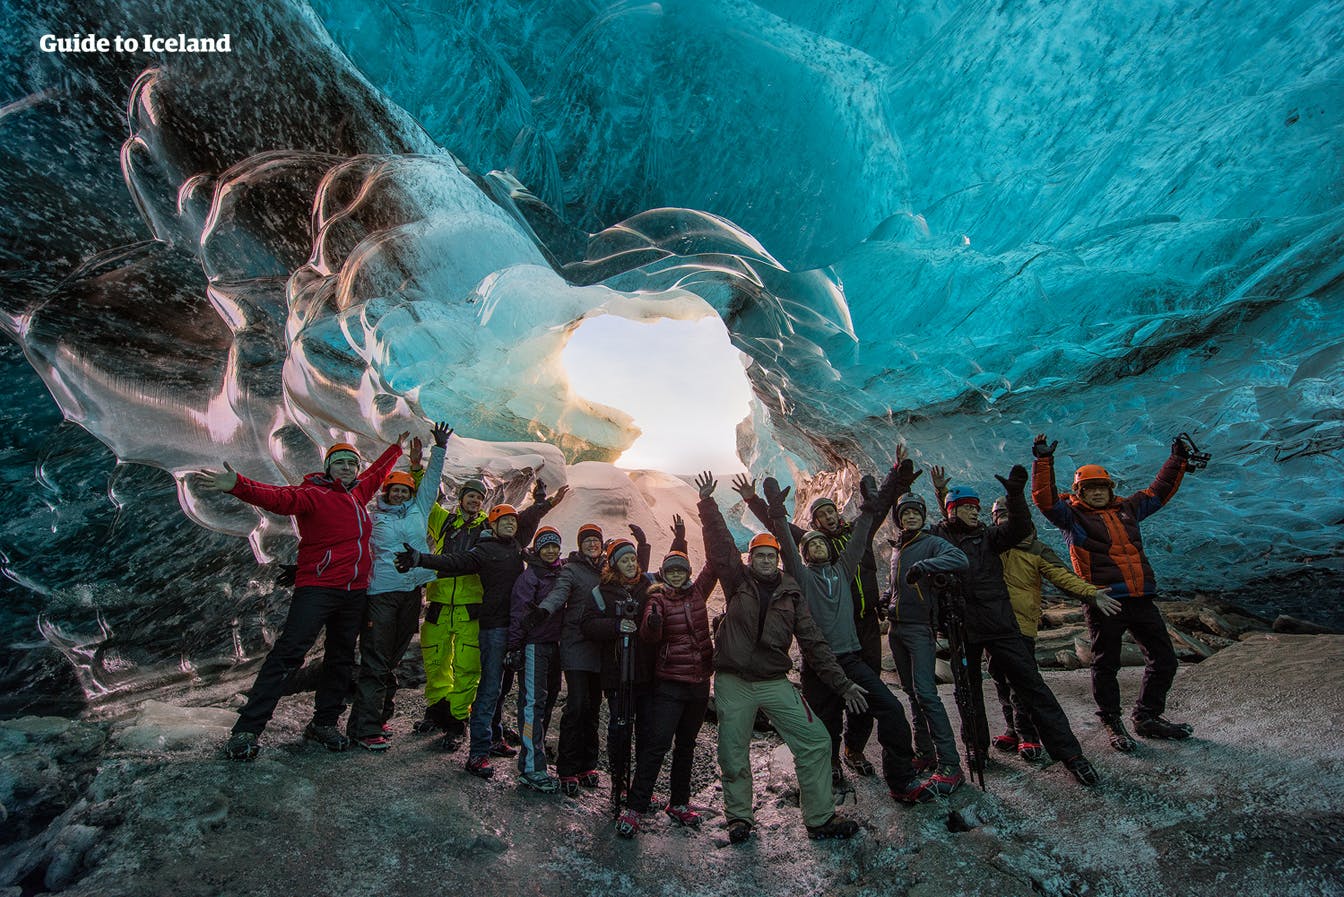 Partout où vous regardez dans une grotte de glace, vous êtes assuré d'être époustouflé par les couleurs